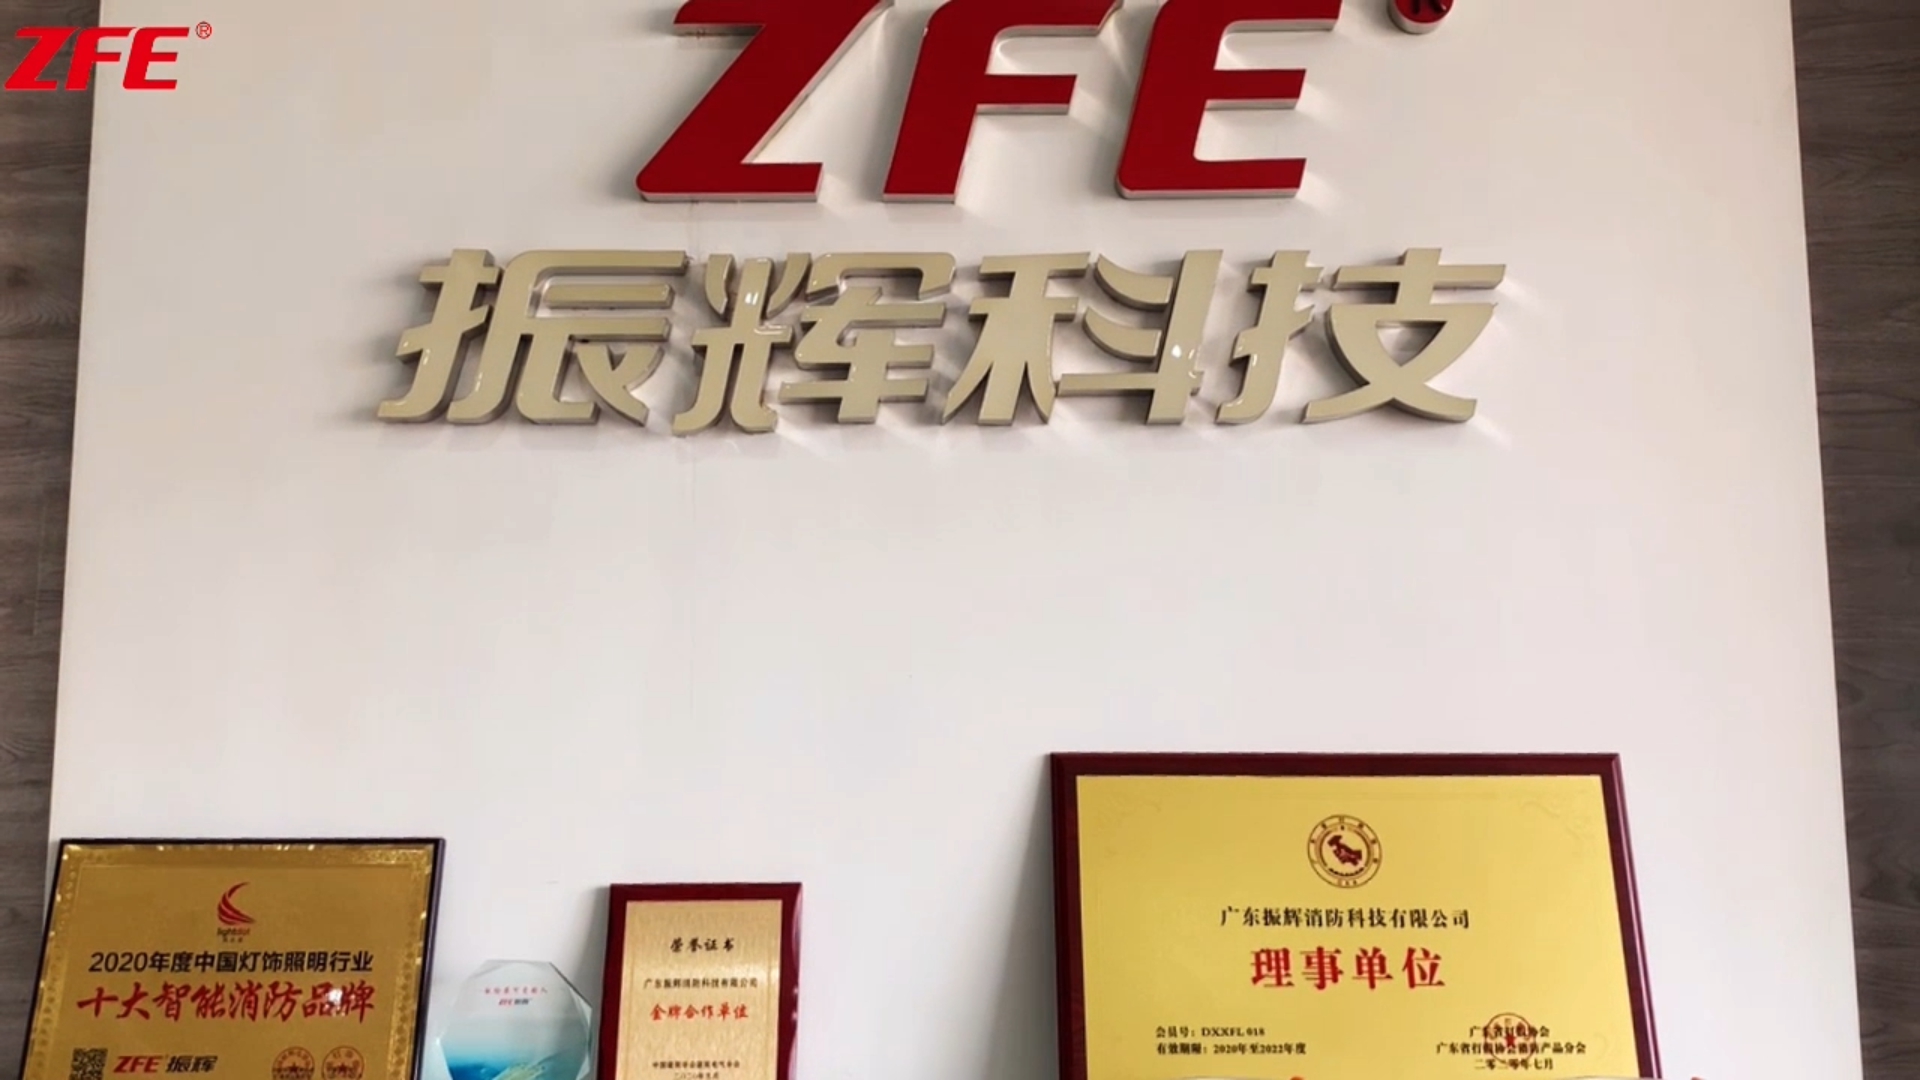 Industria elkarteak Guangdong Zhenhui Fire Technology Co., Ltd bisitatzera datoz.